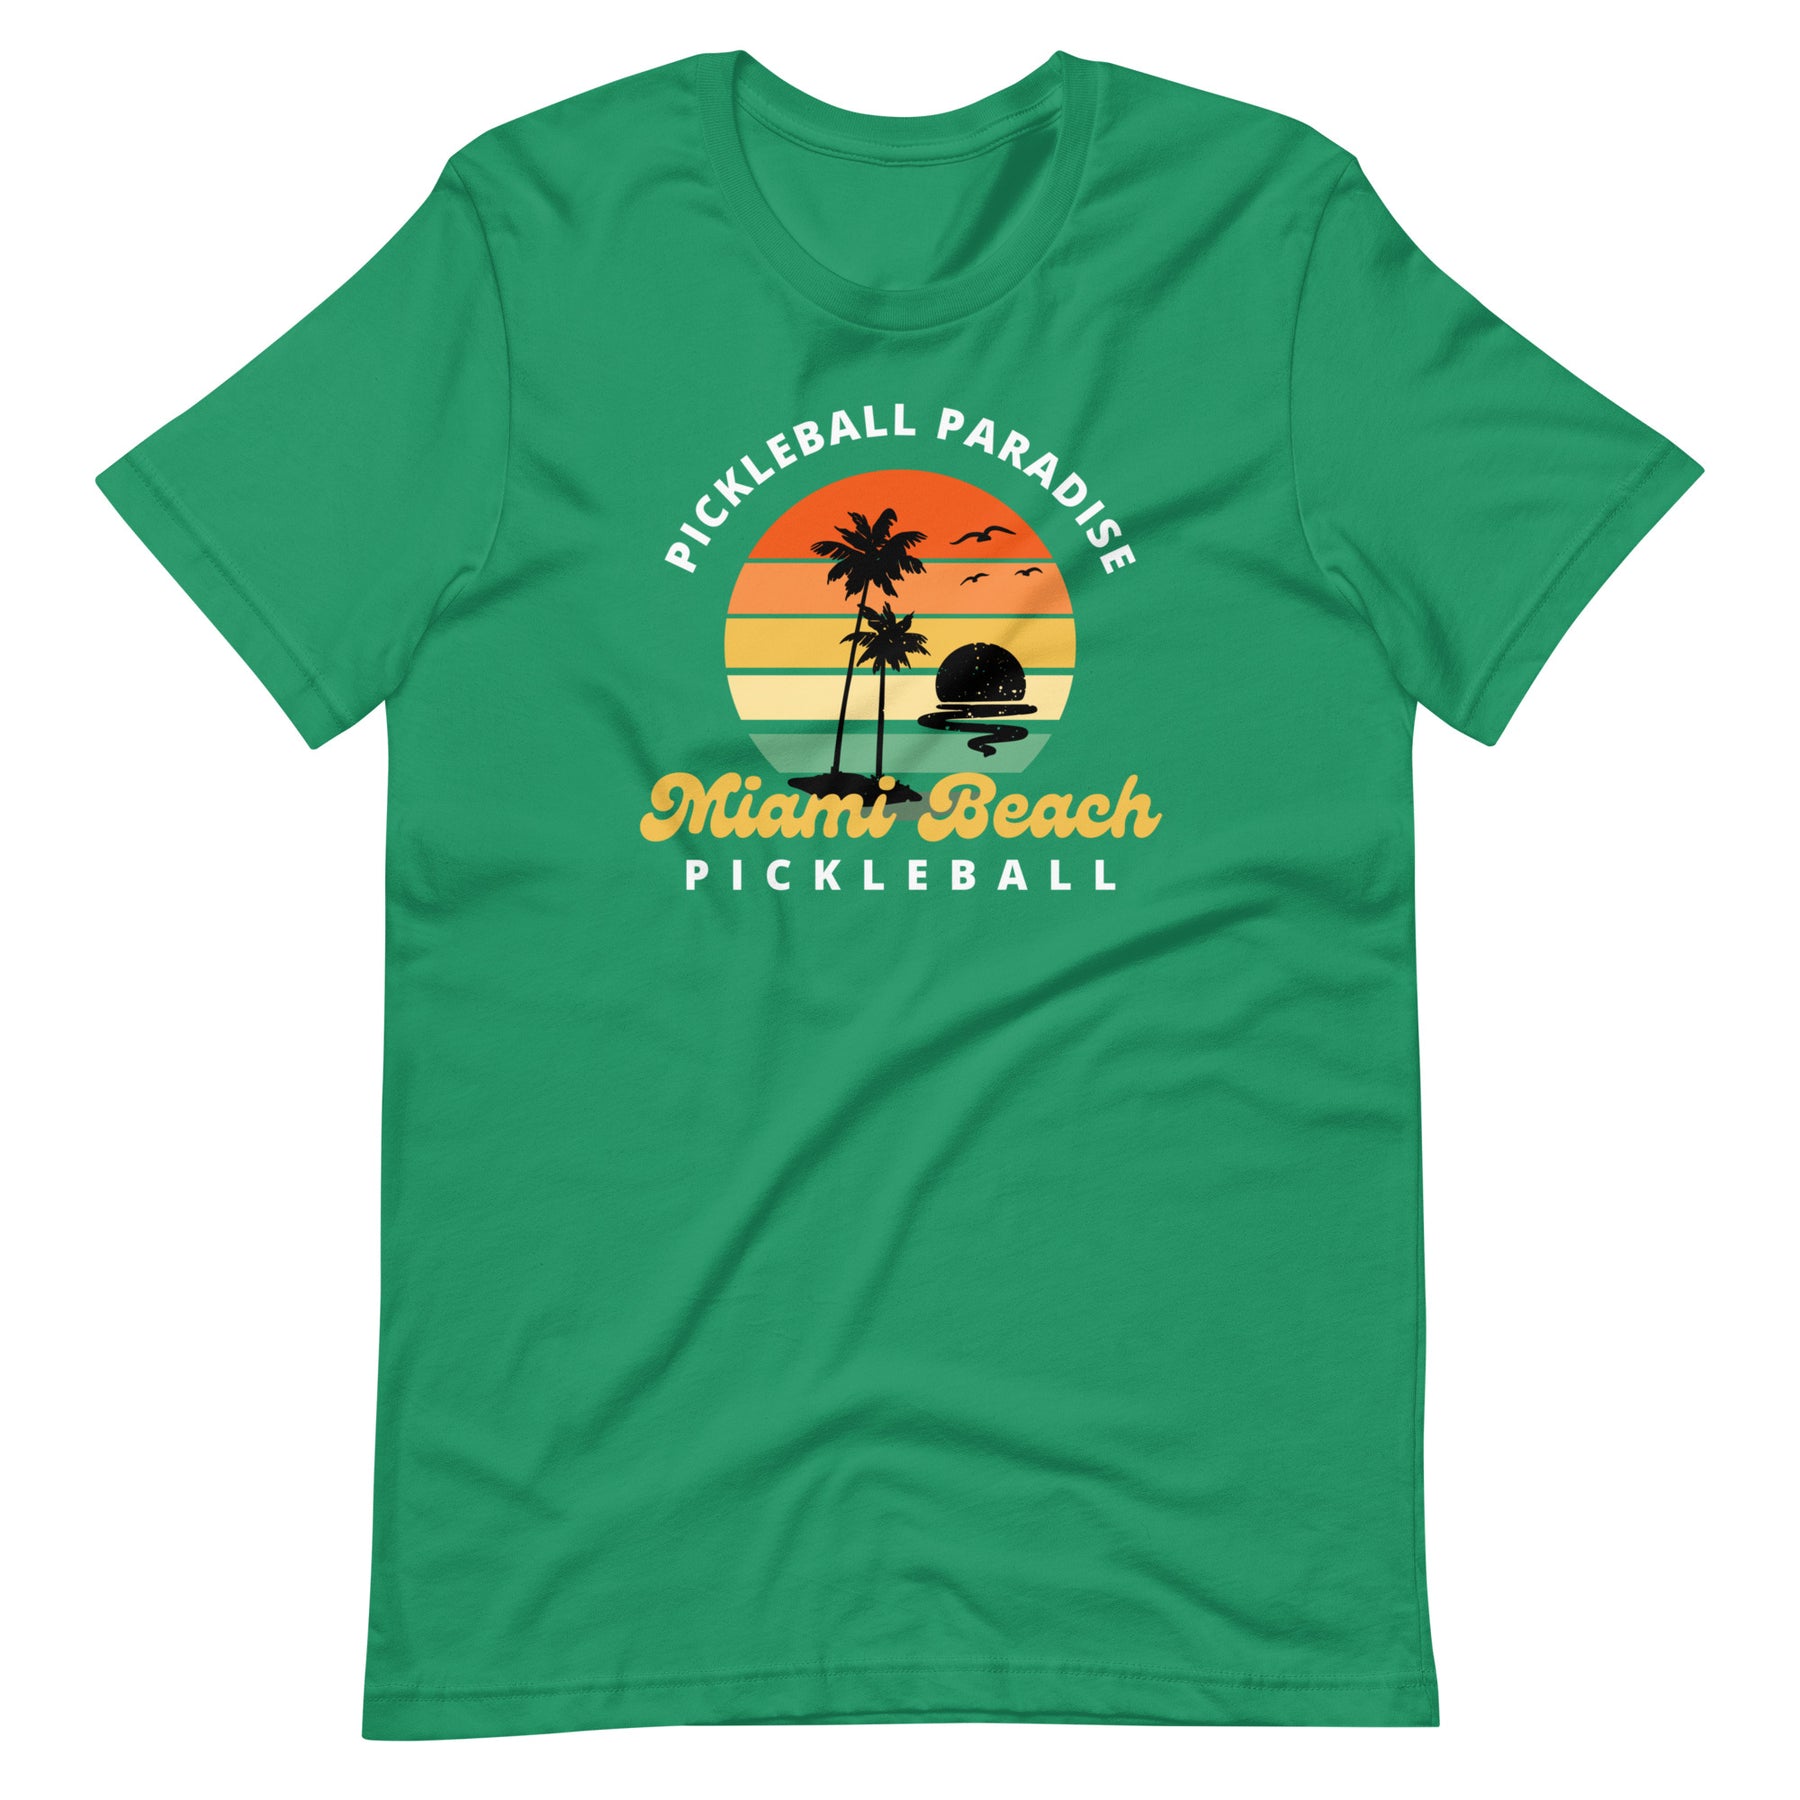 Miami Beach Pickleball T-shirt